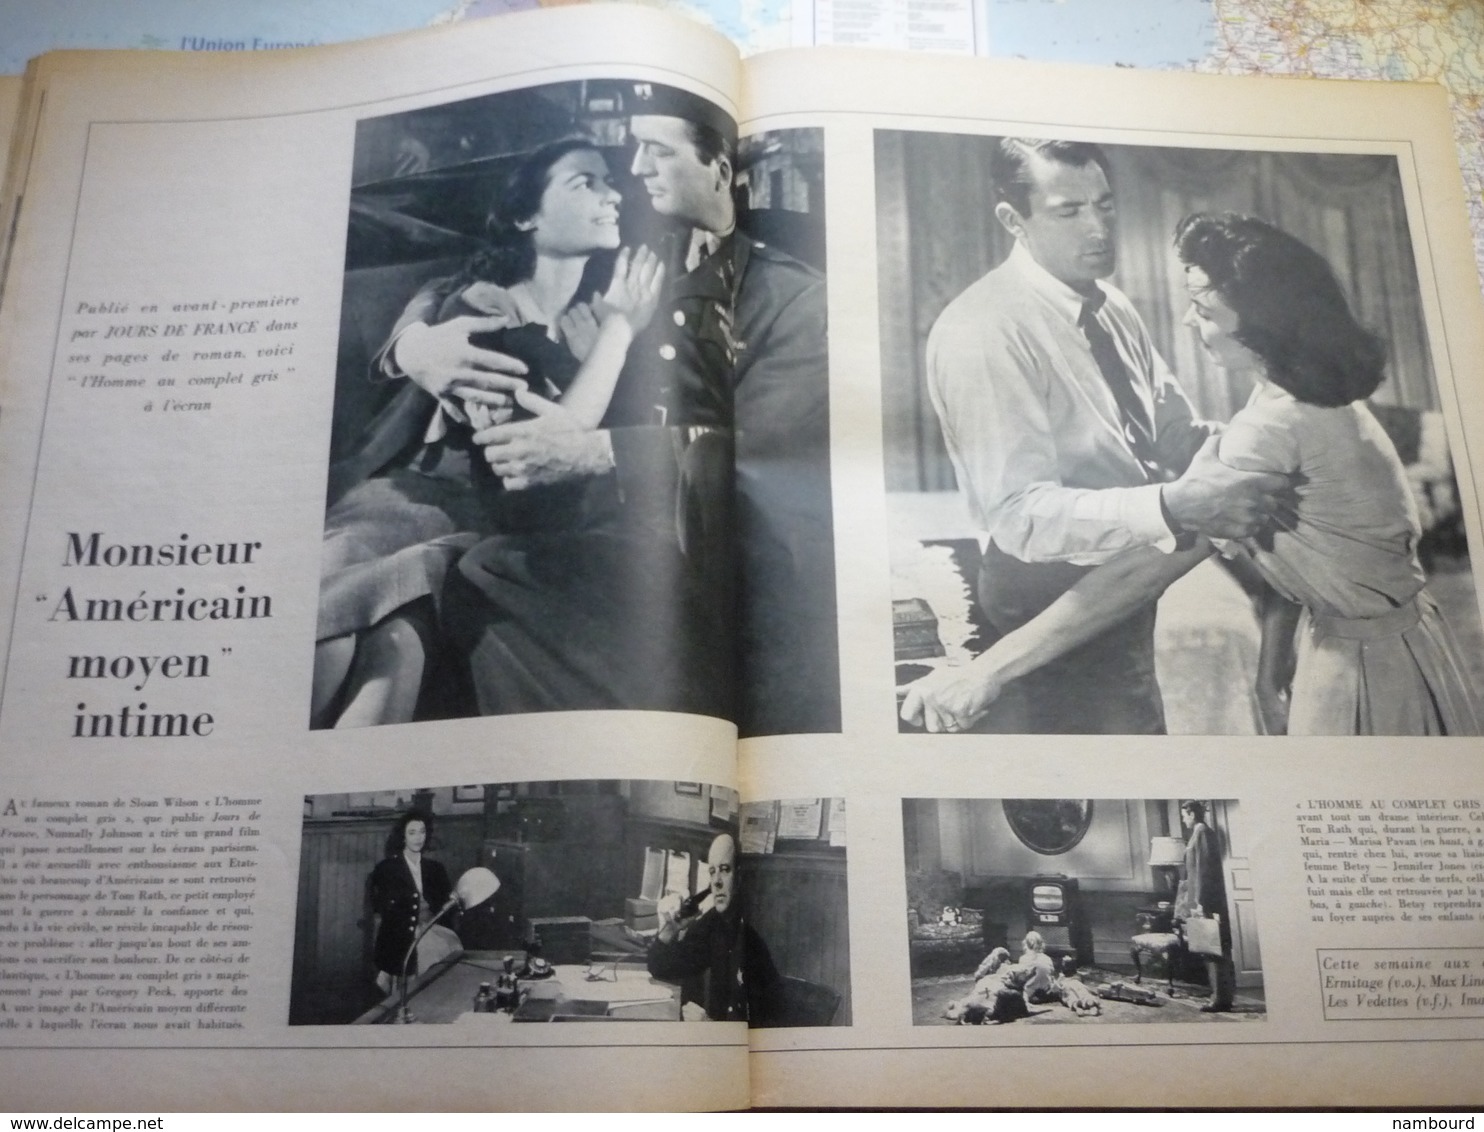 Jour de France N°99 6 Octobre 1956 43-e salon de l'automobile : la famille Aronde 57 / Maurice Chevallier / Margaret